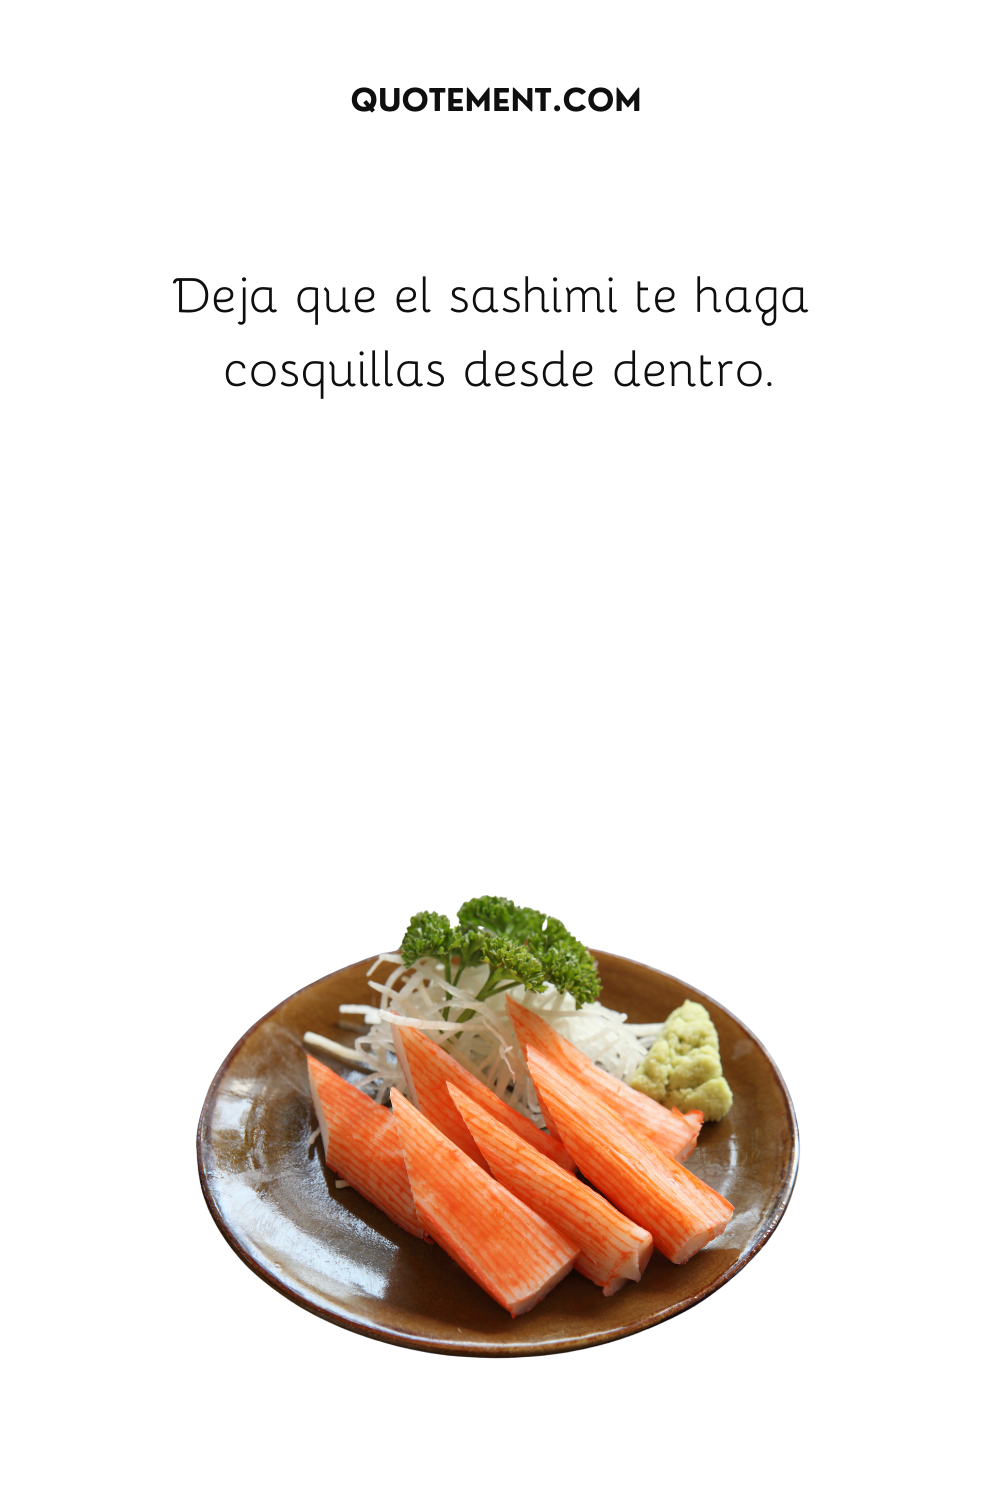 Deja que el sashimi te haga cosquillas desde dentro.